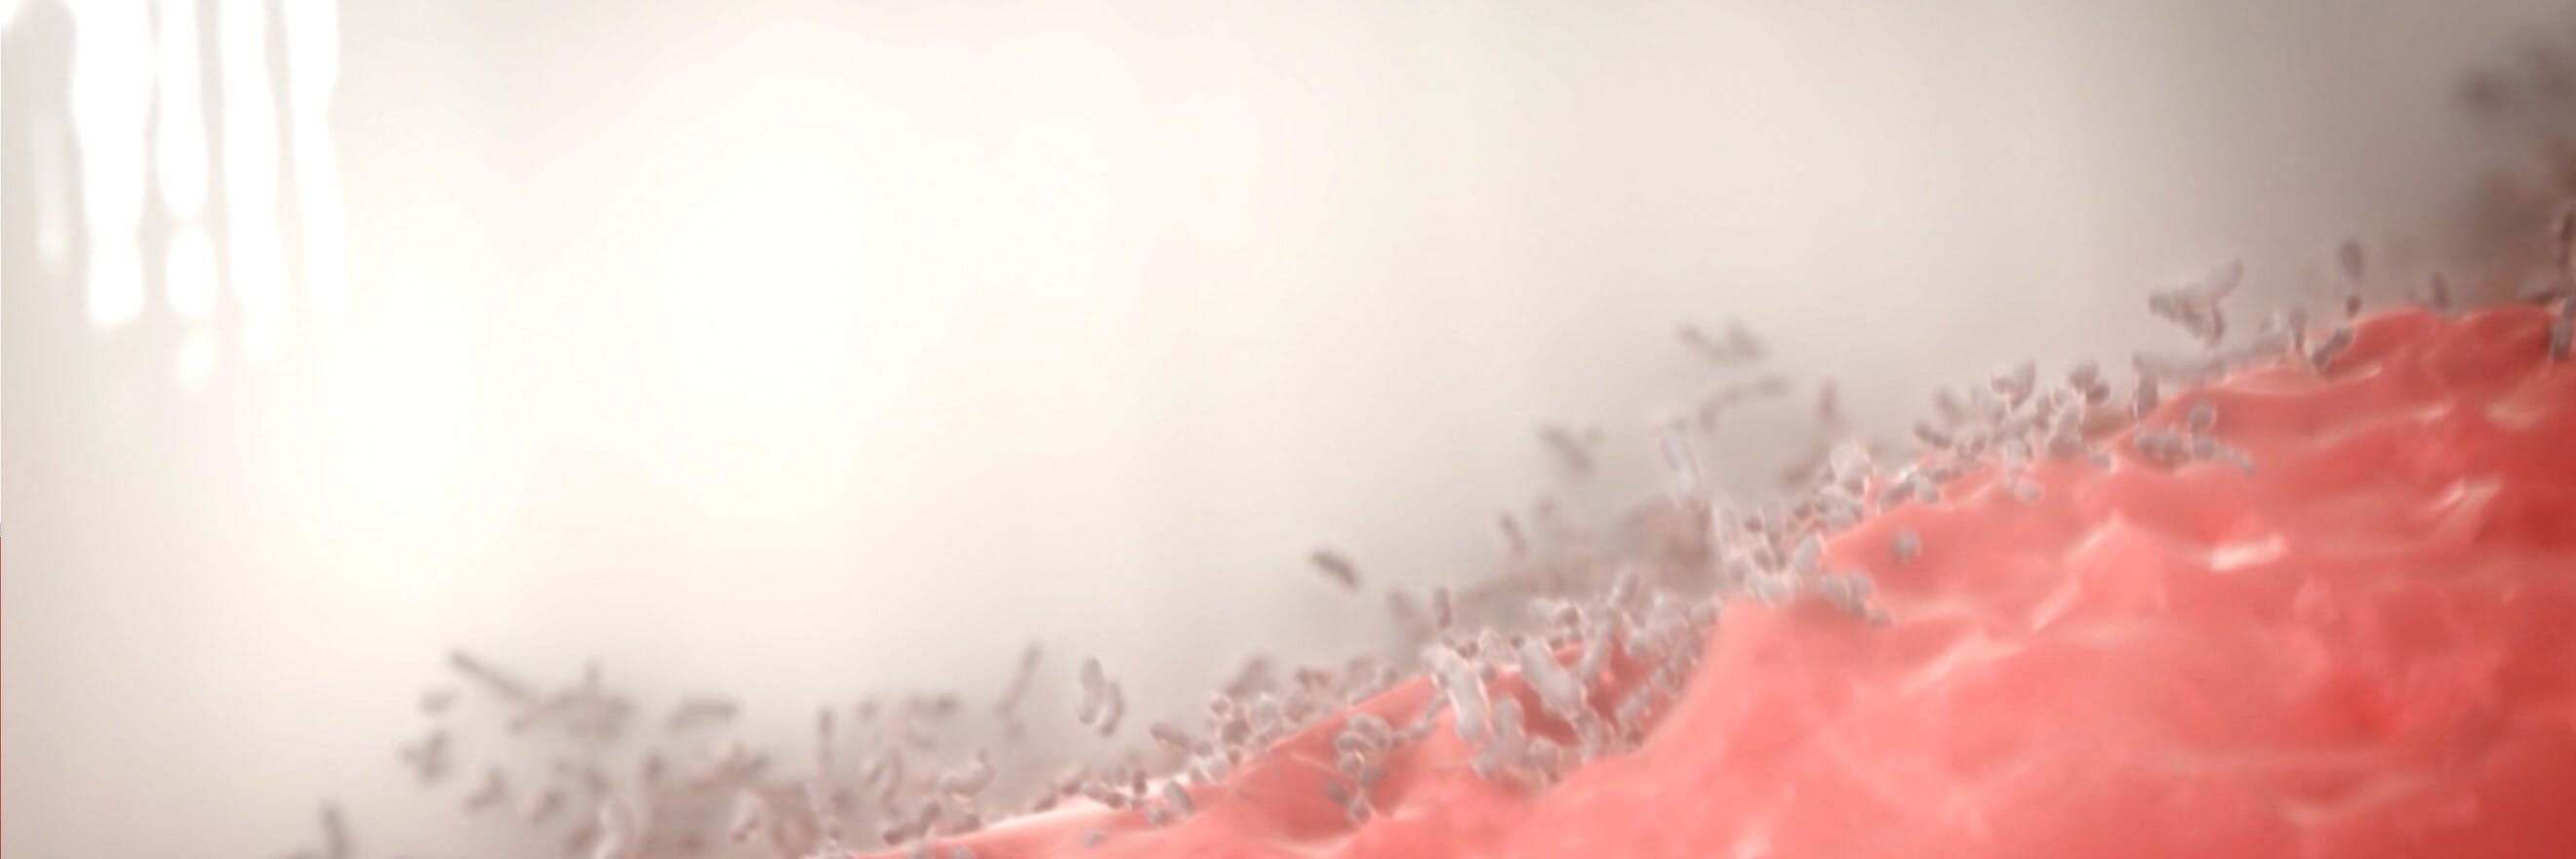 Απεικόνιση βακτηρίων στα ούλα, με την ταμπέλα "Αίτια"